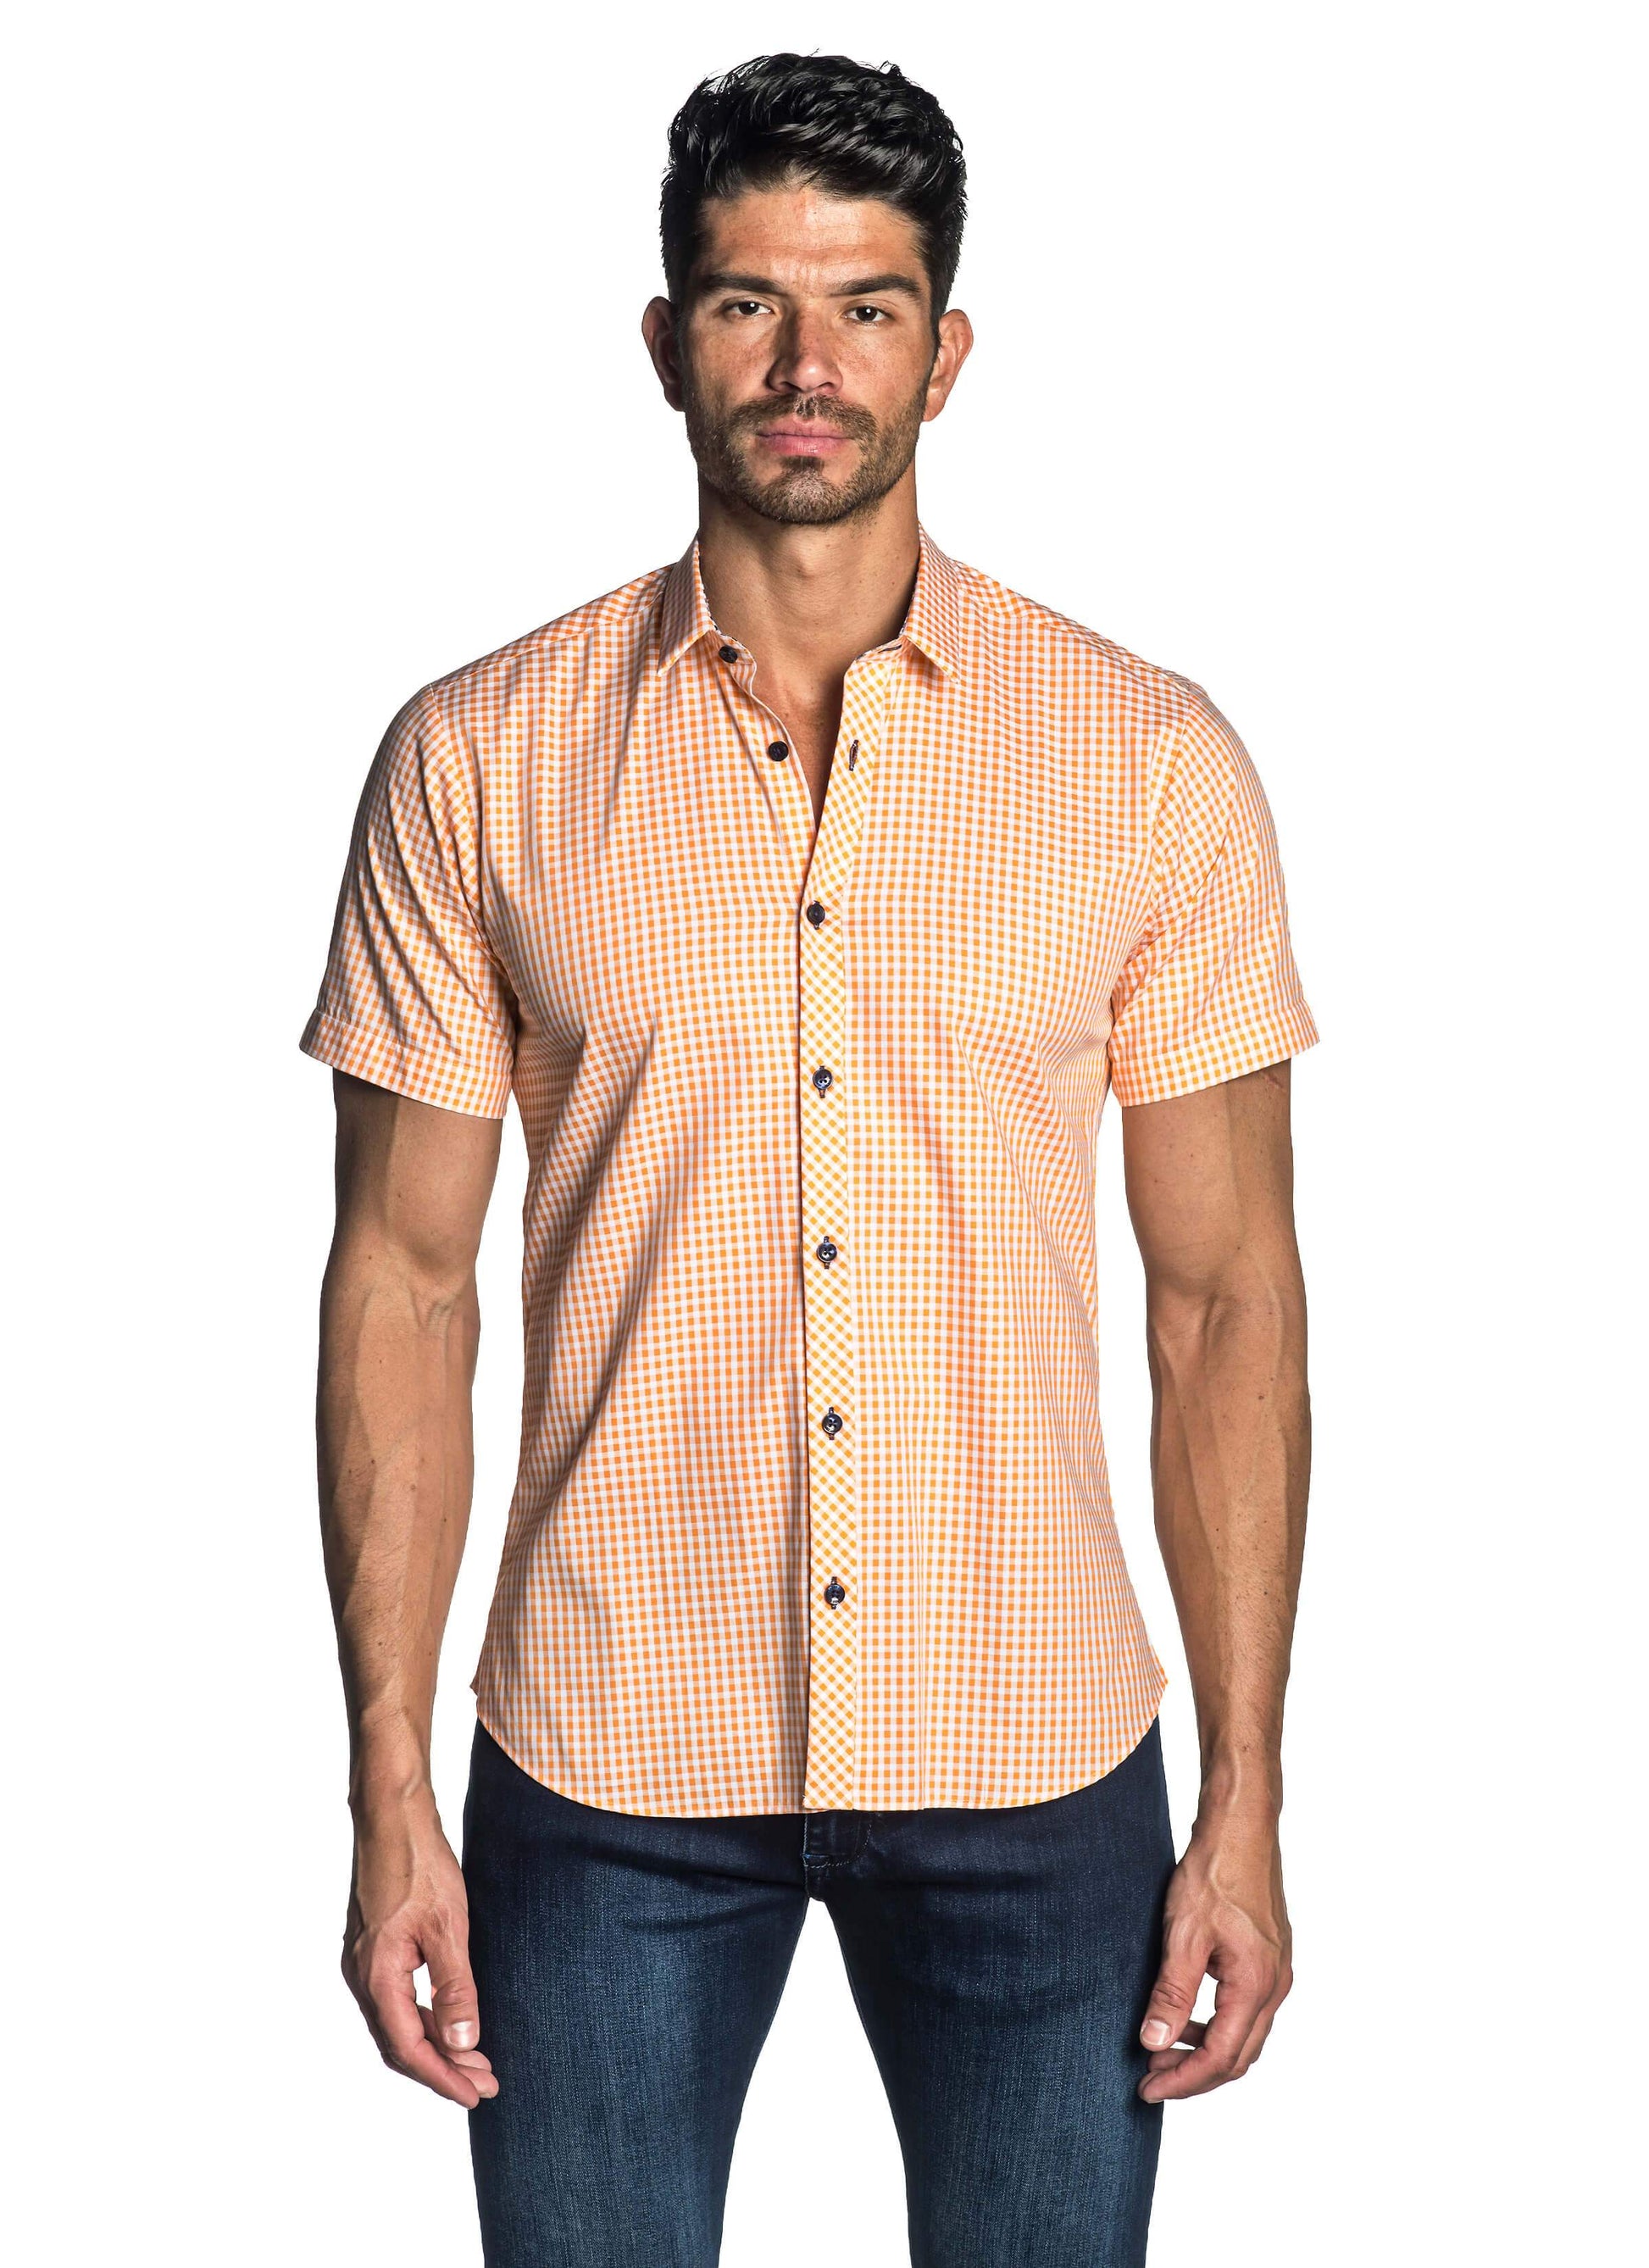 Orange Gingham Short Sleeve Shirt for Men AH-OT-7133-SS - Front - Jared Lang